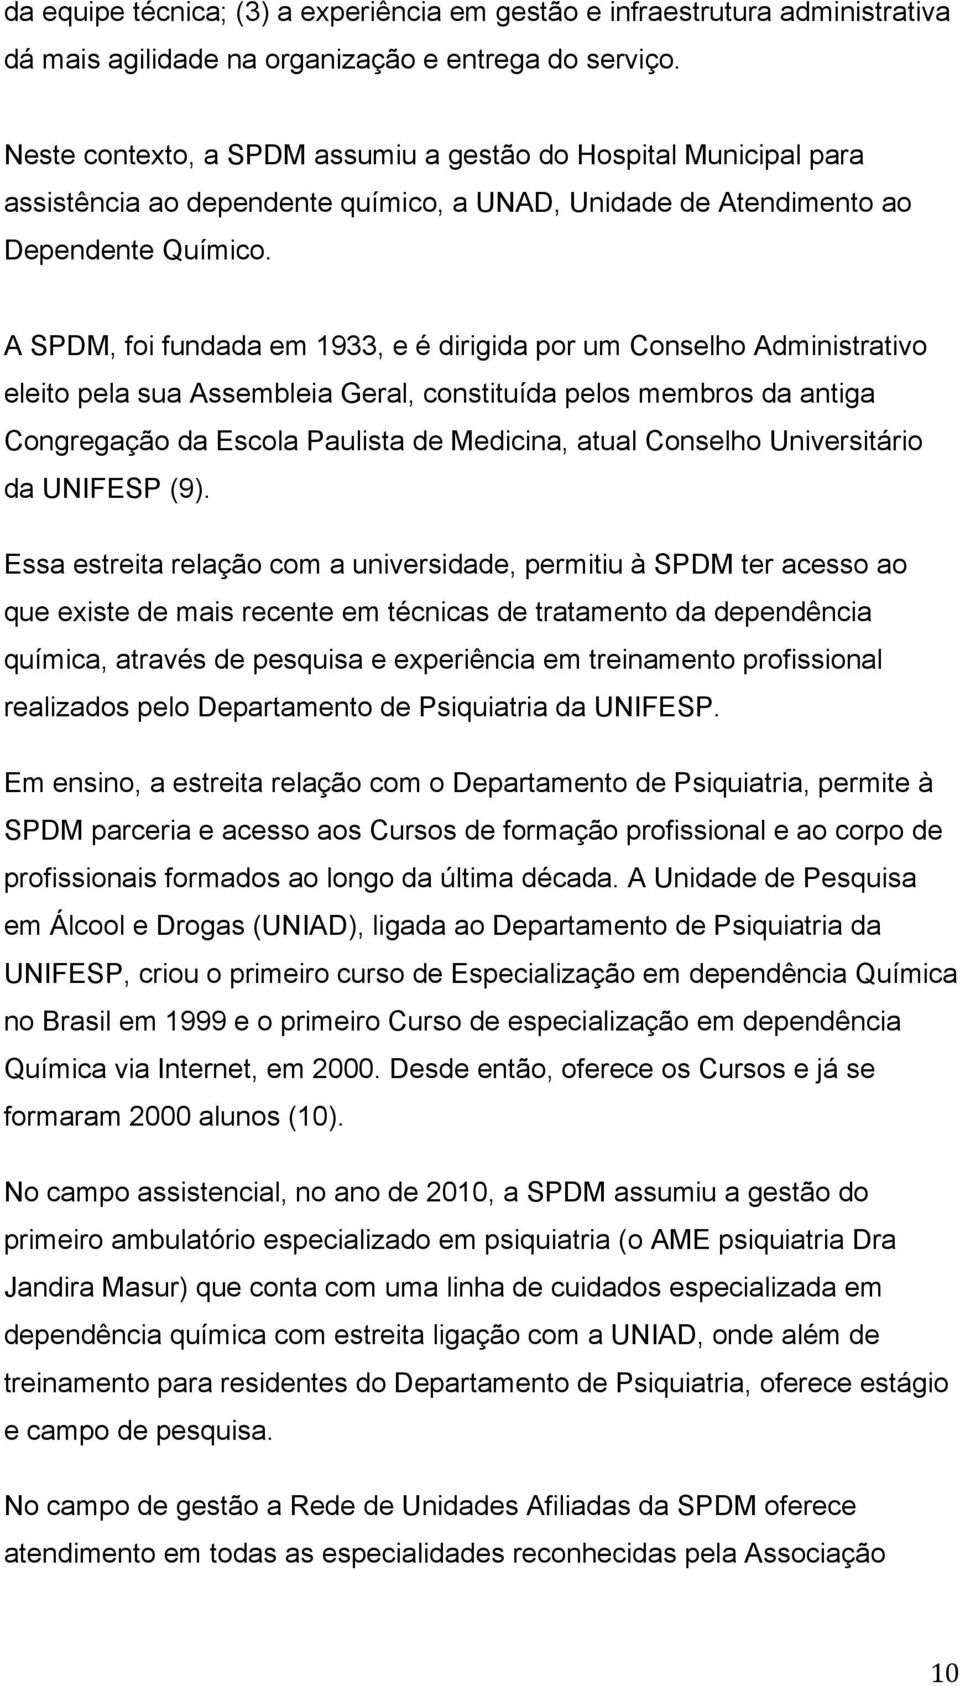 A SPDM, foi fundada em 1933, e é dirigida por um Conselho Administrativo eleito pela sua Assembleia Geral, constituída pelos membros da antiga Congregação da Escola Paulista de Medicina, atual